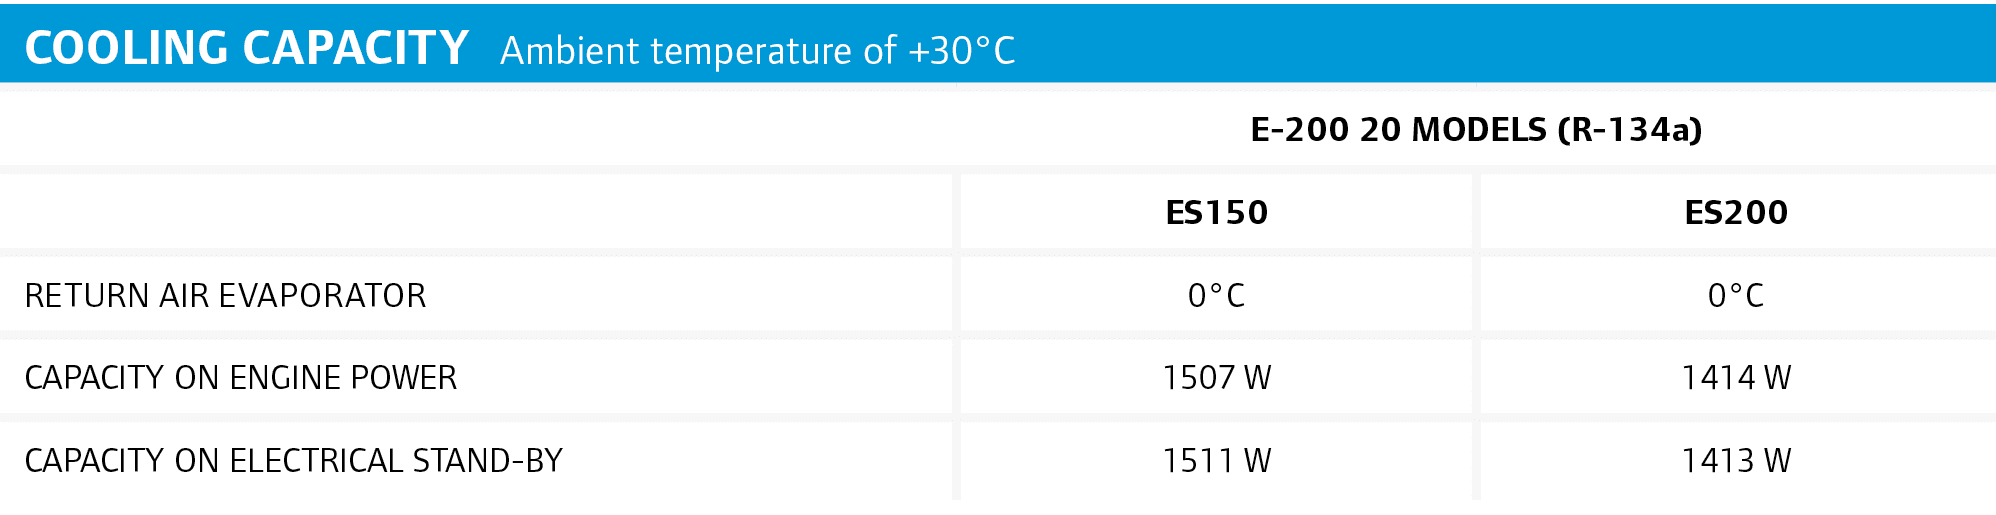 Cooling capacity Ambient temperature of +30°C ,,E-200 20 Models (R-134a),,ES150,ES200,RETURN air evaporator,0°C,0°C,C...